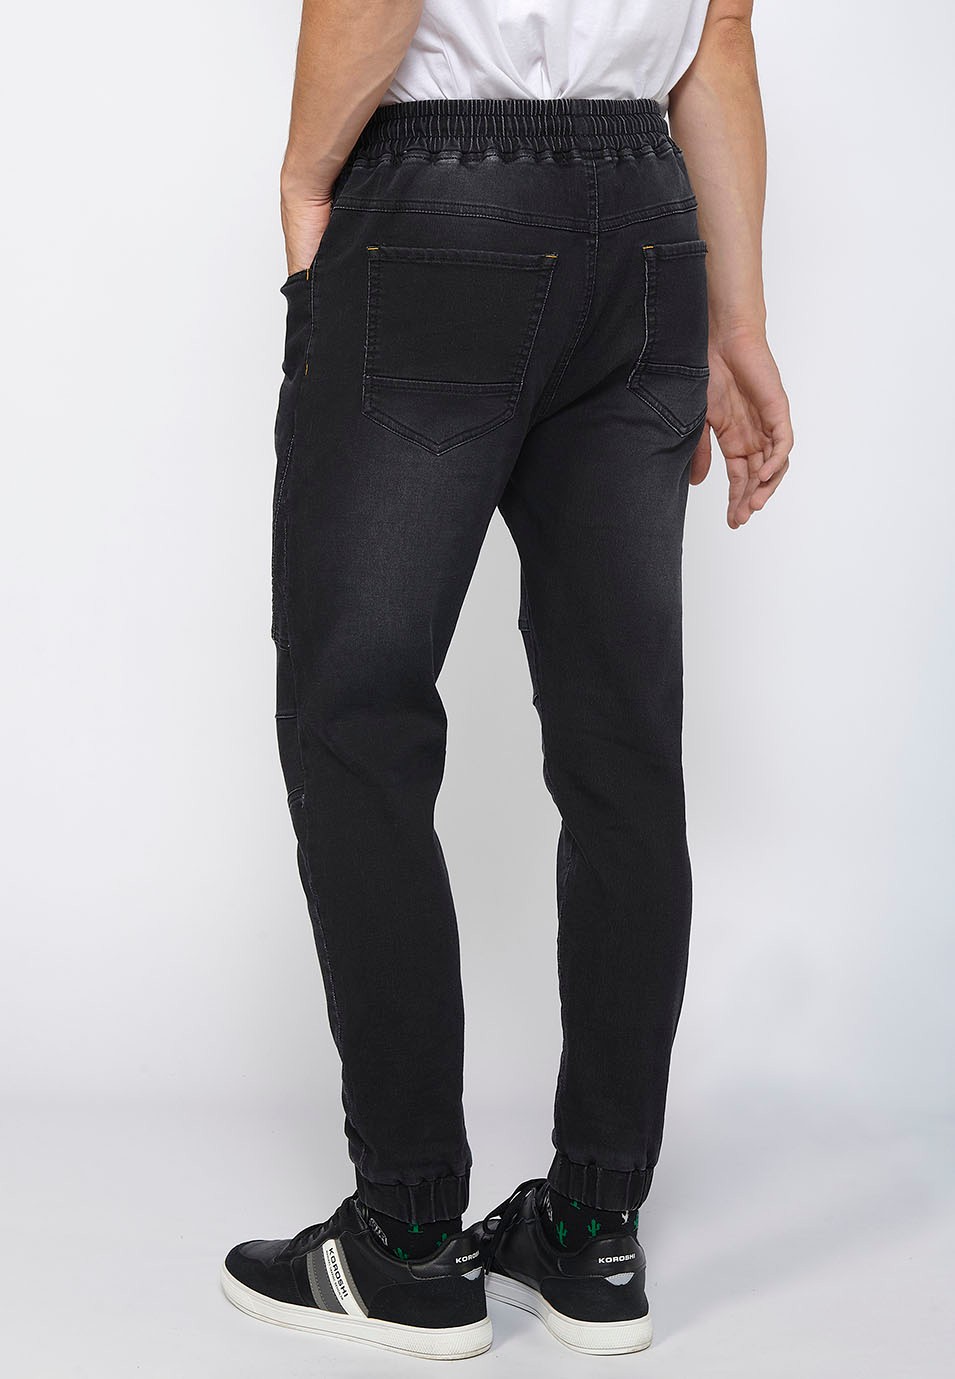 Pantalón largo jogger slim ajustado en tobillos con cintura ajustable con goma y cordón color Negro para Hombre 6